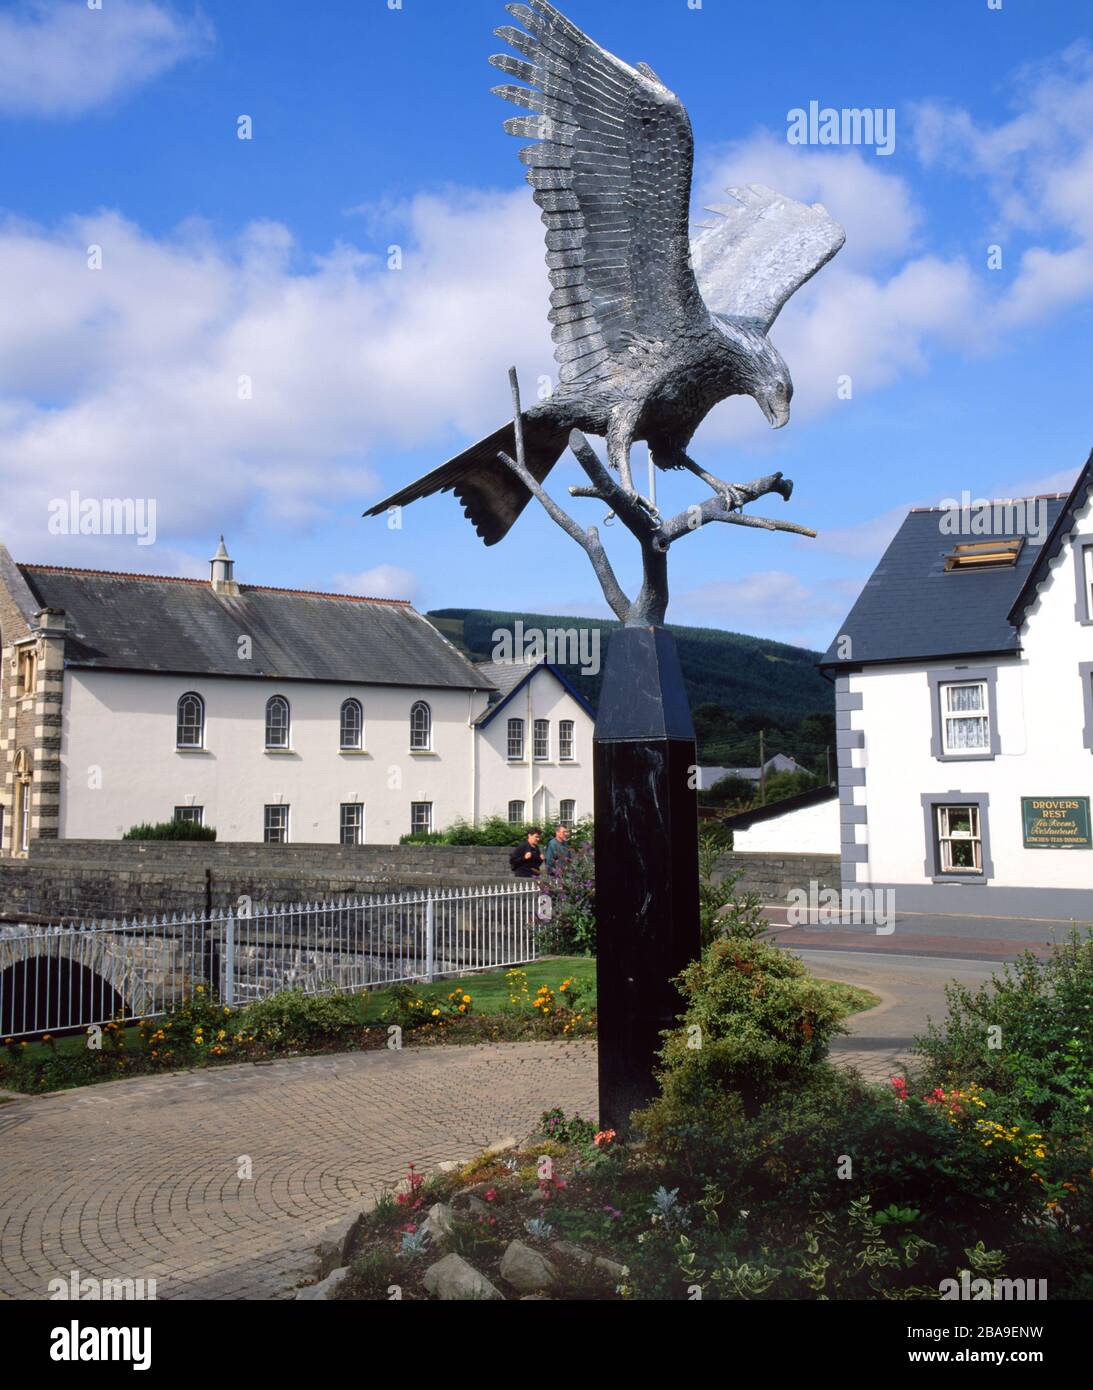 Sculpture de Kite rouge 'Spirit dans le ciel' par Sandy O'Connor, Llanwrtyd Wells, Powys, Mid Wales. Banque D'Images